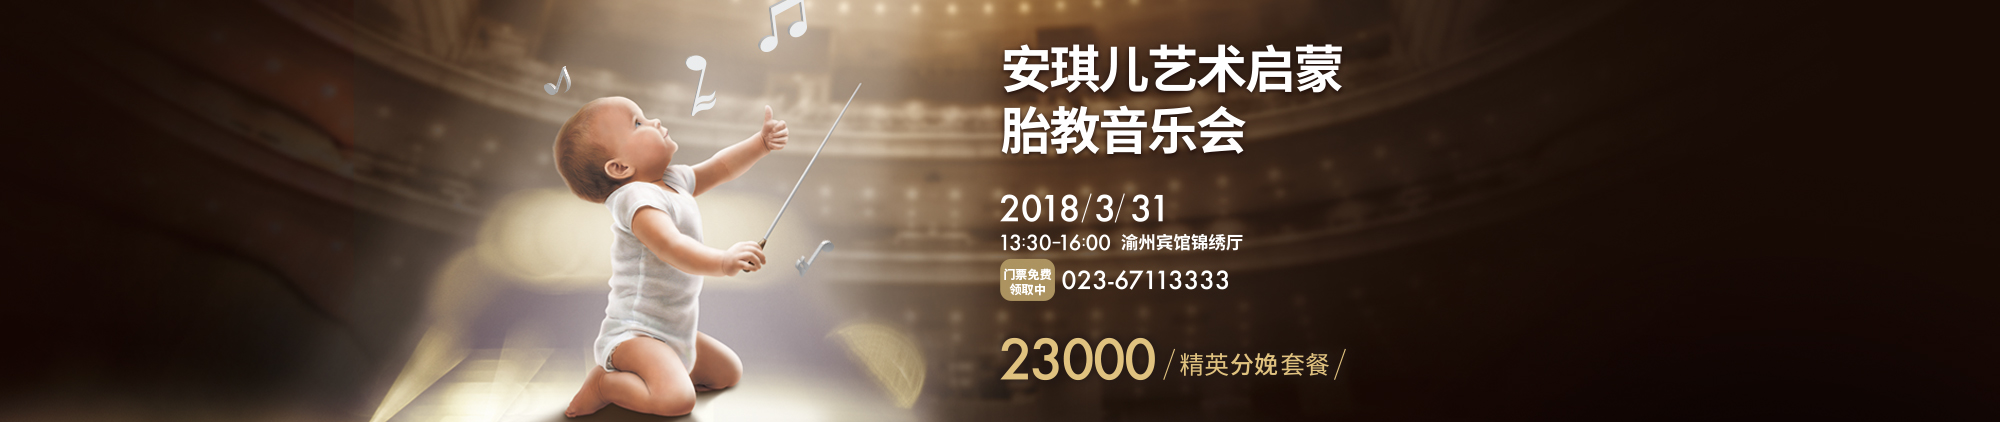 2018安琪儿艺术启蒙胎教音乐会3月31日渝州宾馆